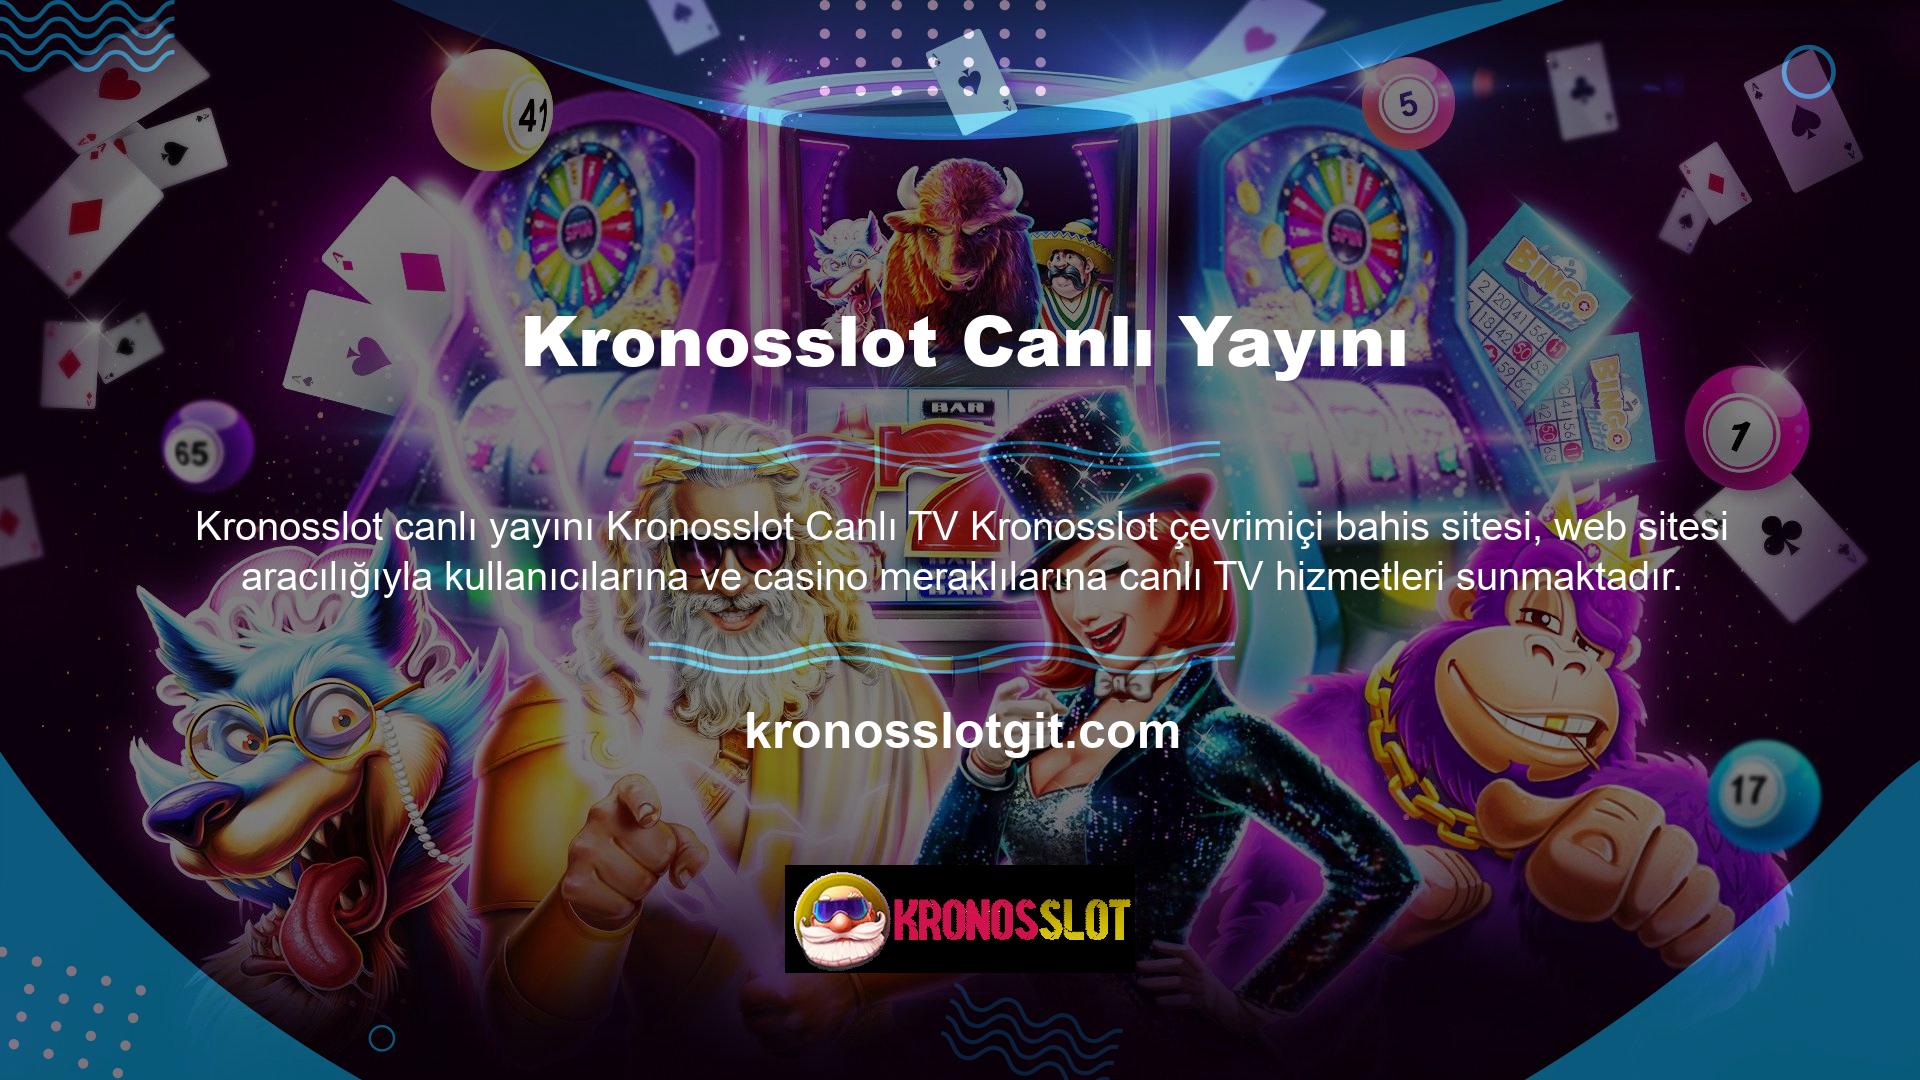 Kronosslot Canlı TV, site kullanıcılarına dünya çapındaki spor karşılaşmalarını canlı izleme, bahis yapma ve takip etme olanağı sunmaktadır